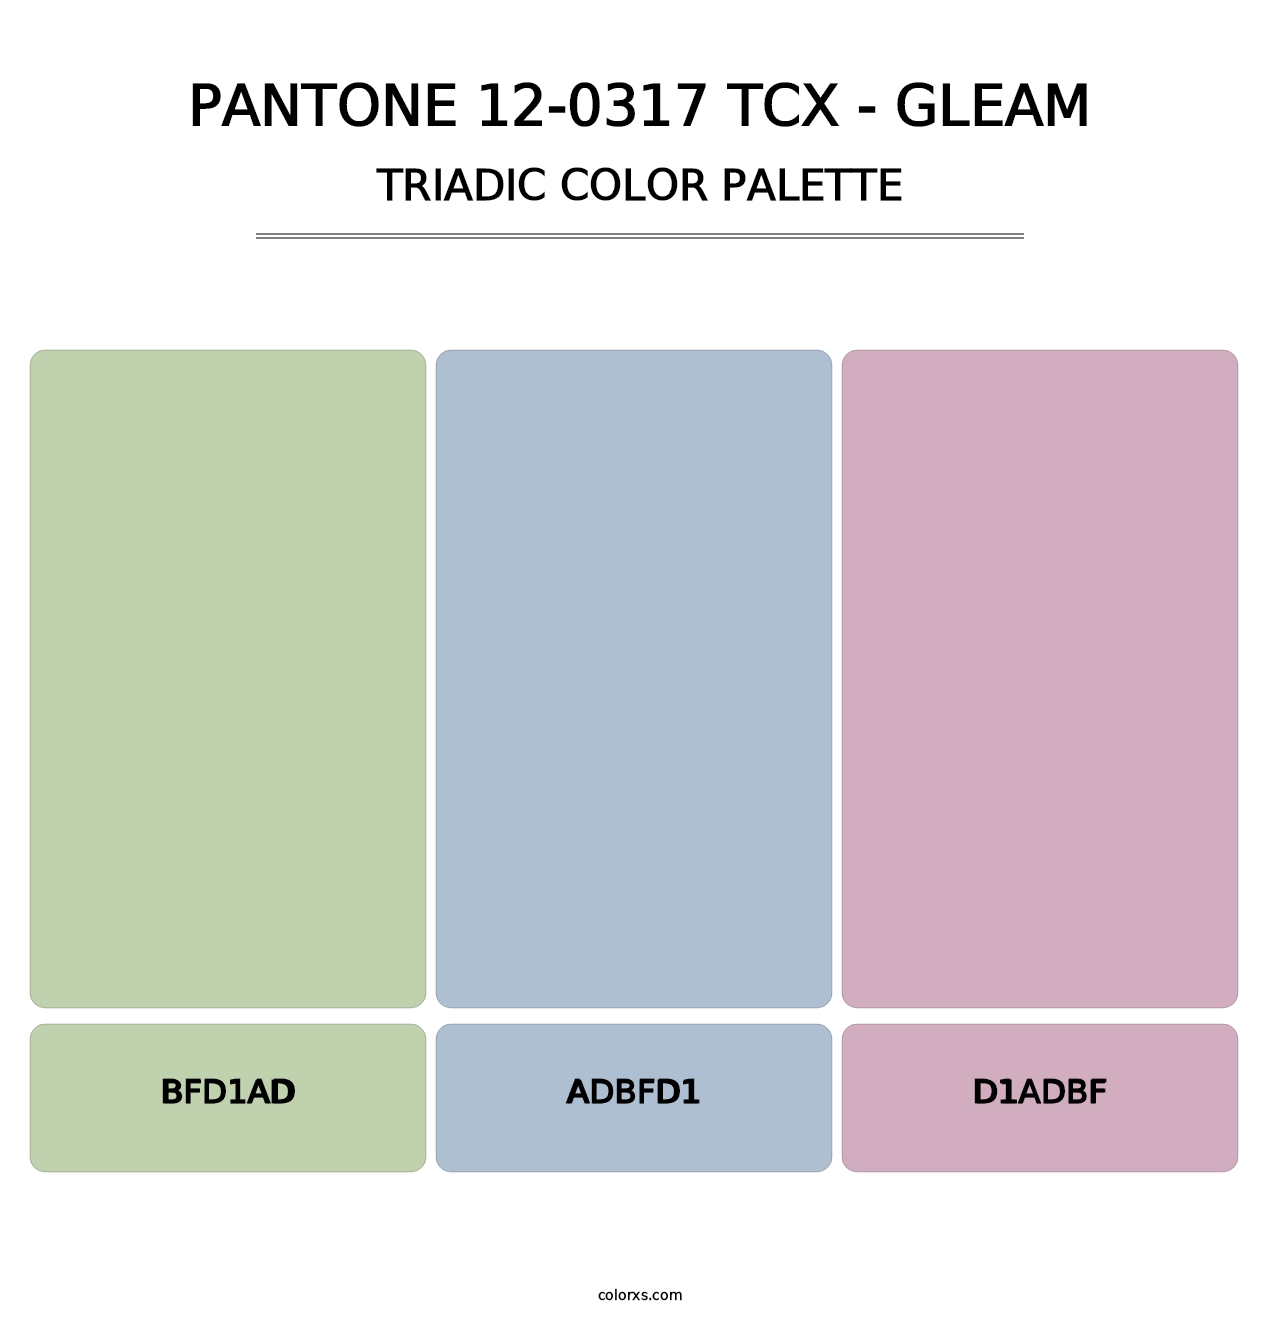 PANTONE 12-0317 TCX - Gleam - Triadic Color Palette